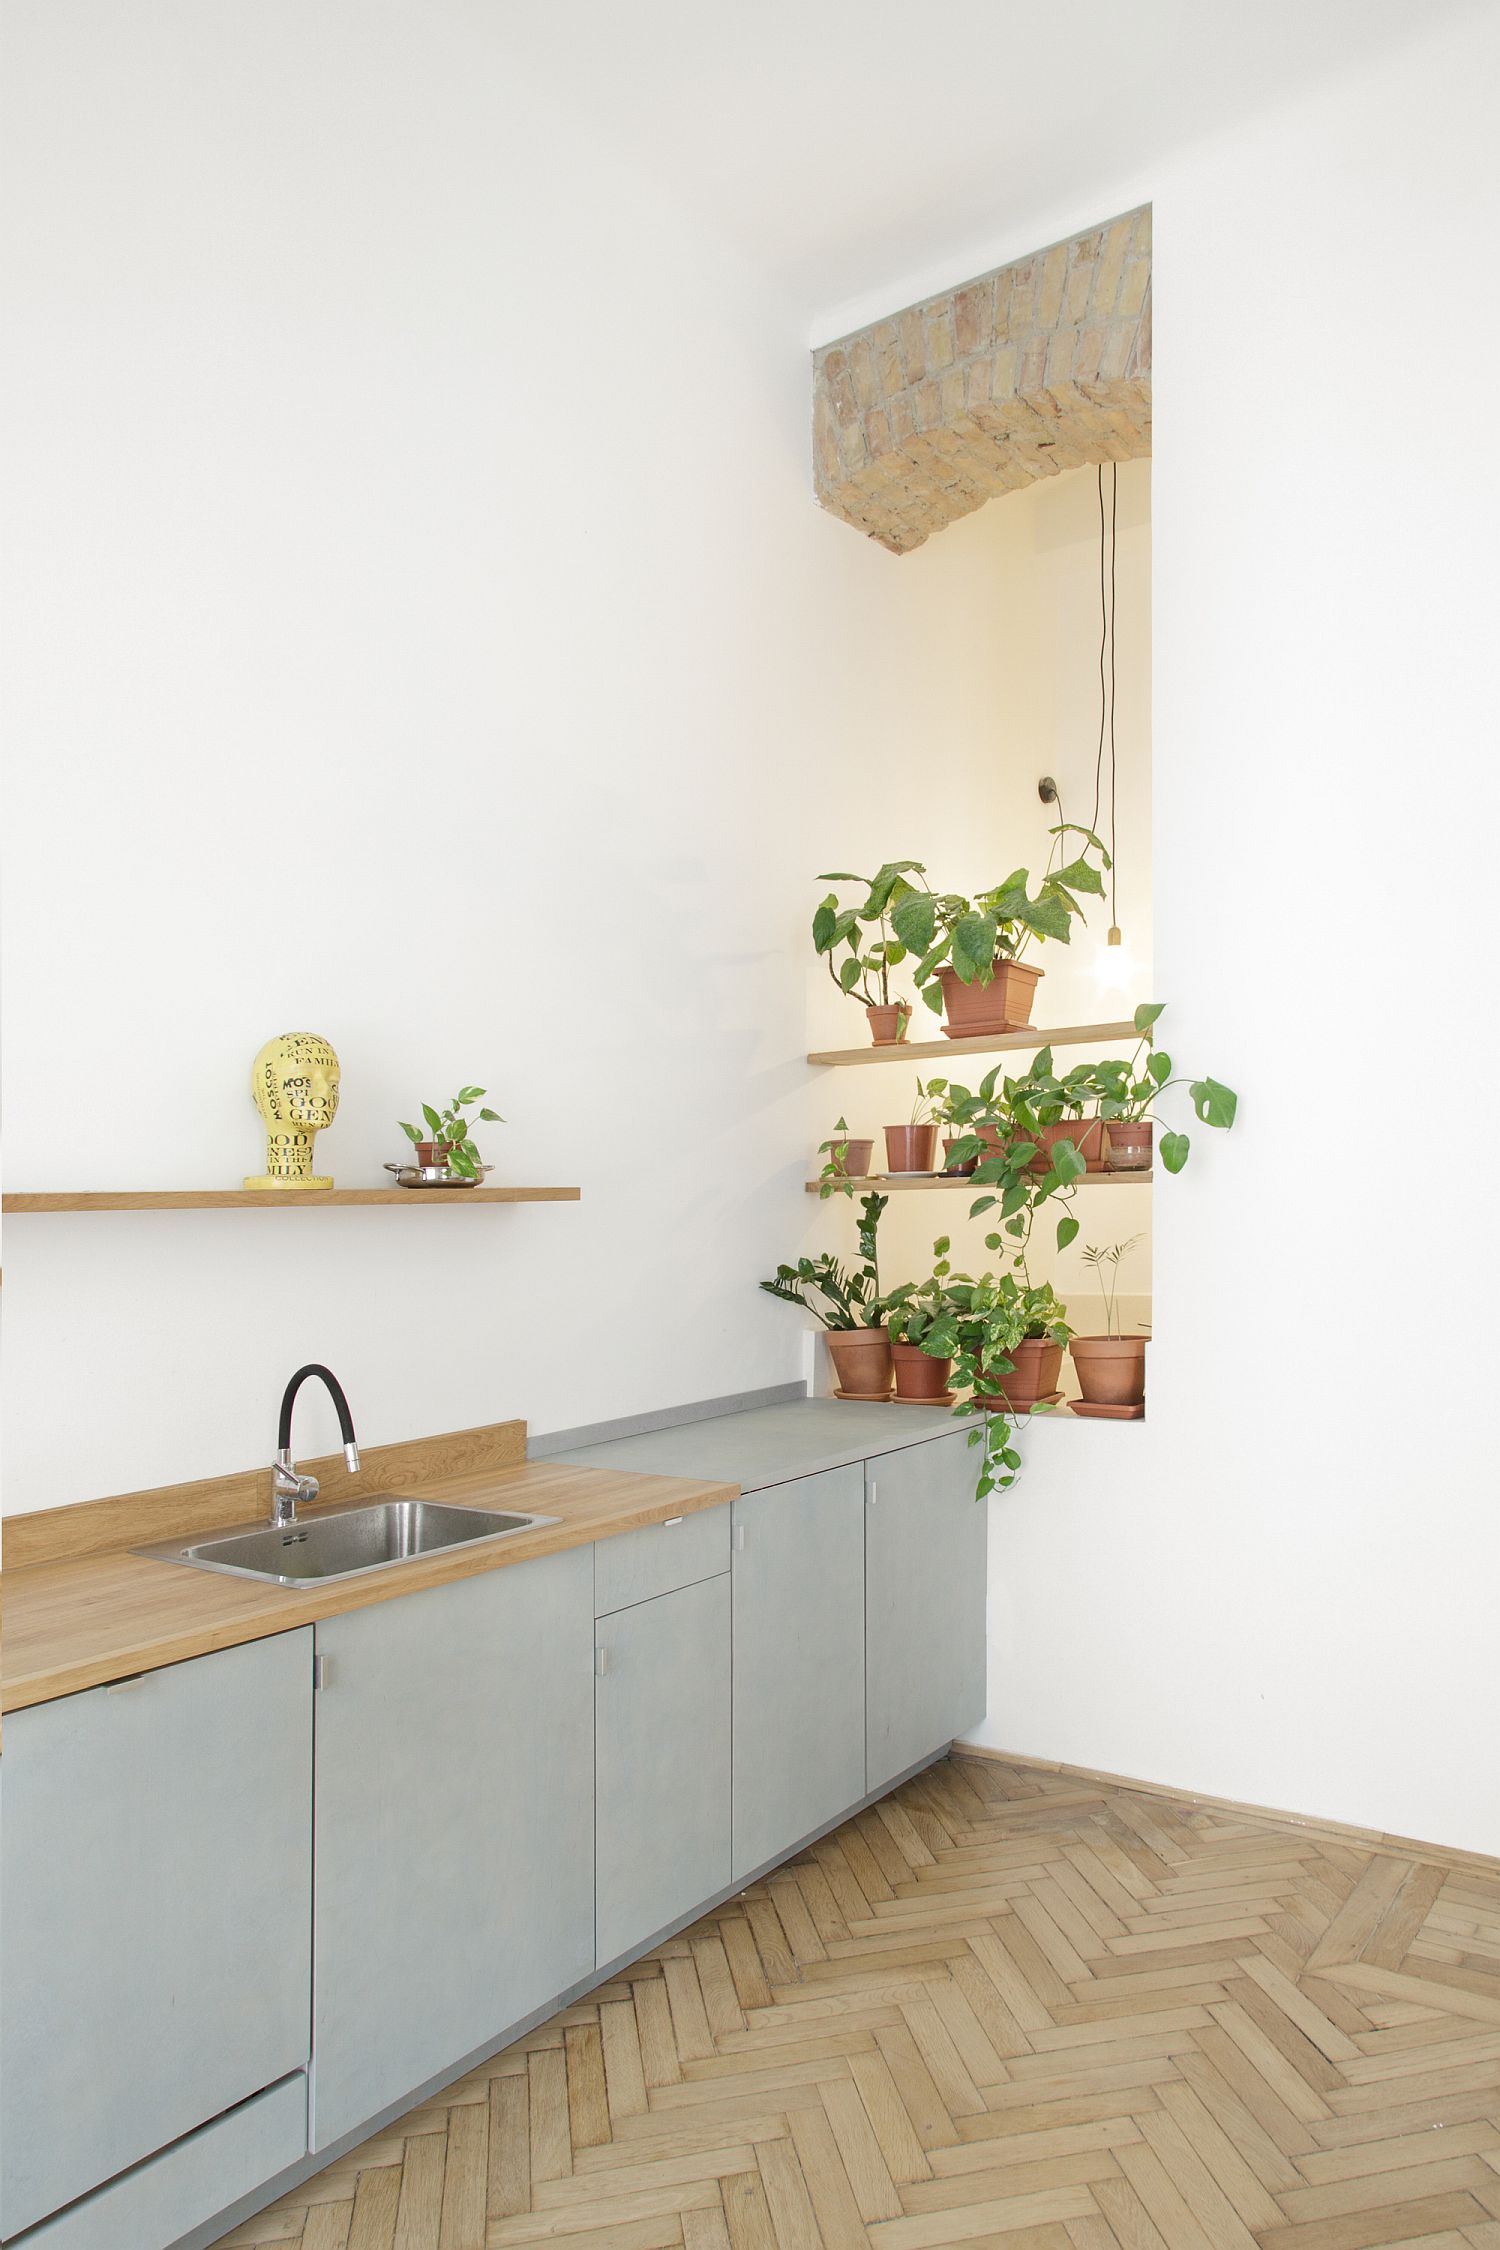 Hình ảnh mảng dầm gạch mộc không sơn trát kết hợp ăn ý cùng cây xanh, đèn trang trí tạo thành góc nhỏ ấn tượng trong phòng bếp.